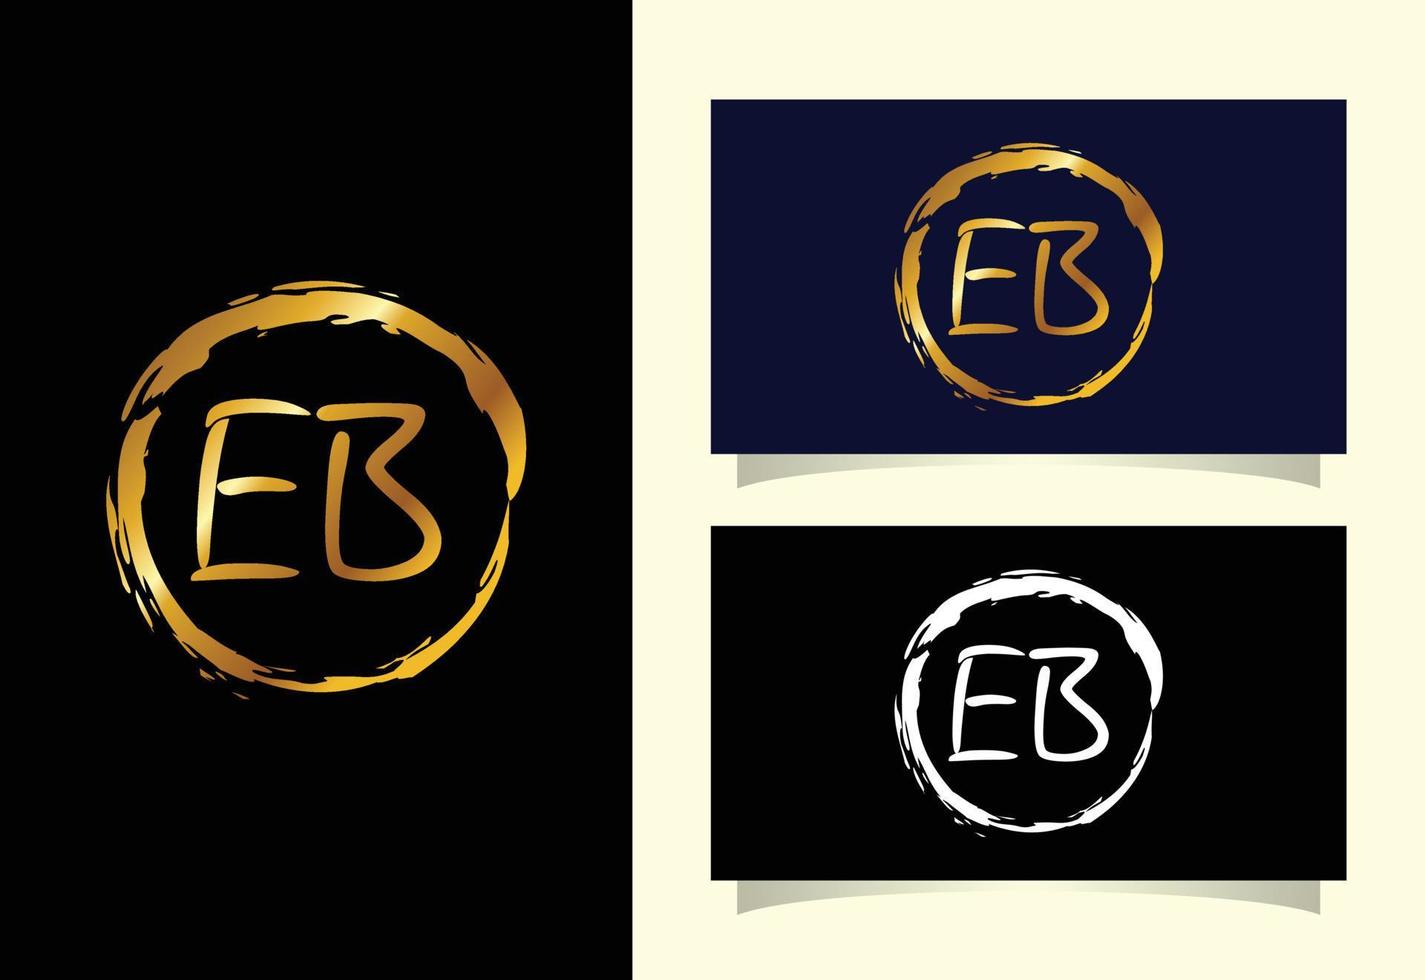 letra inicial eb vetor de design de logotipo. símbolo gráfico do alfabeto para identidade de negócios corporativos